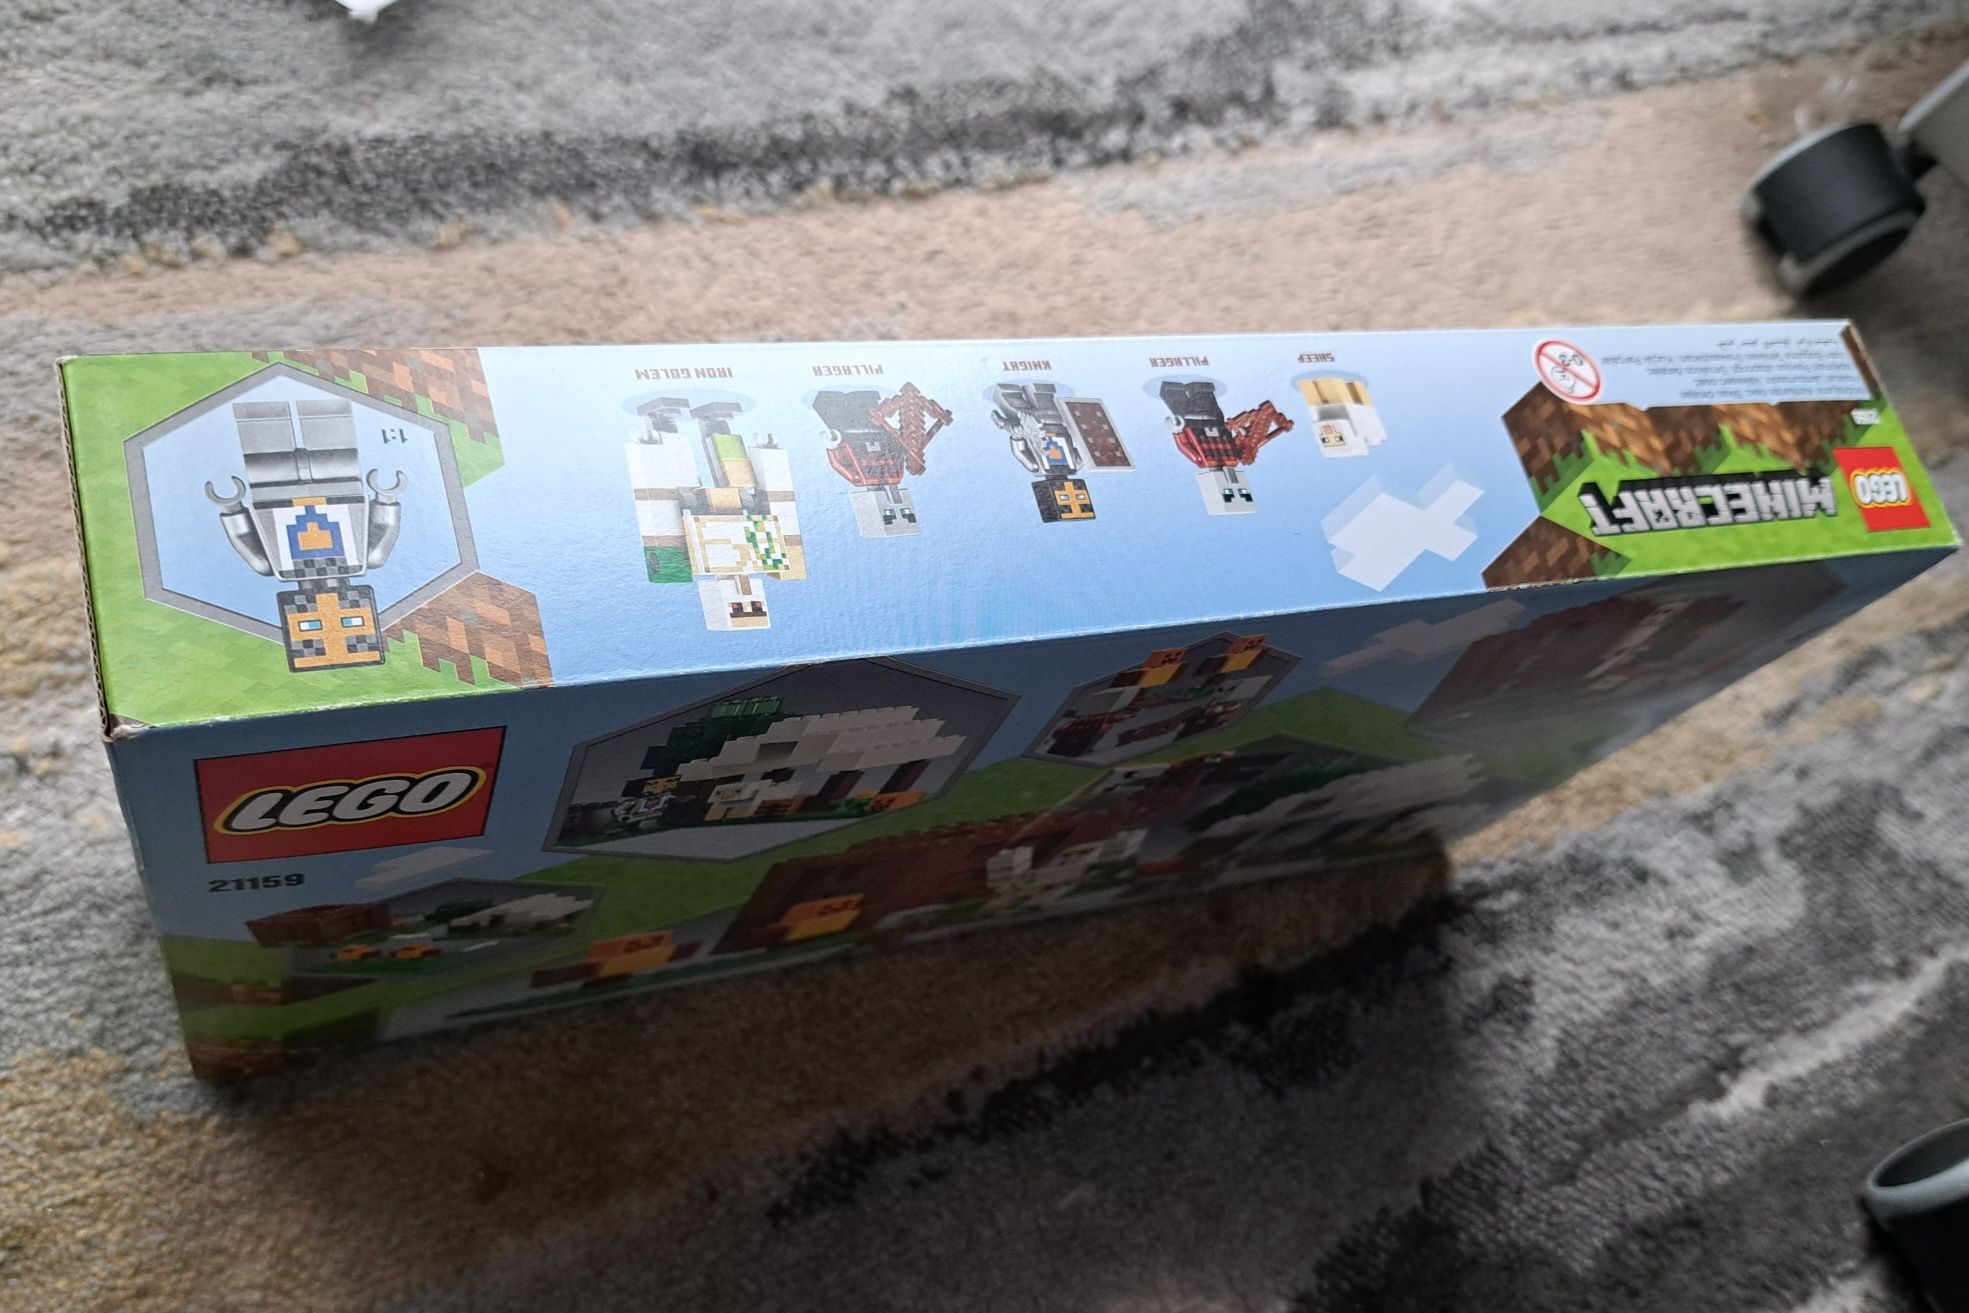 LEGO Minecraft 21159 Kryjówka rozbójników NOWE